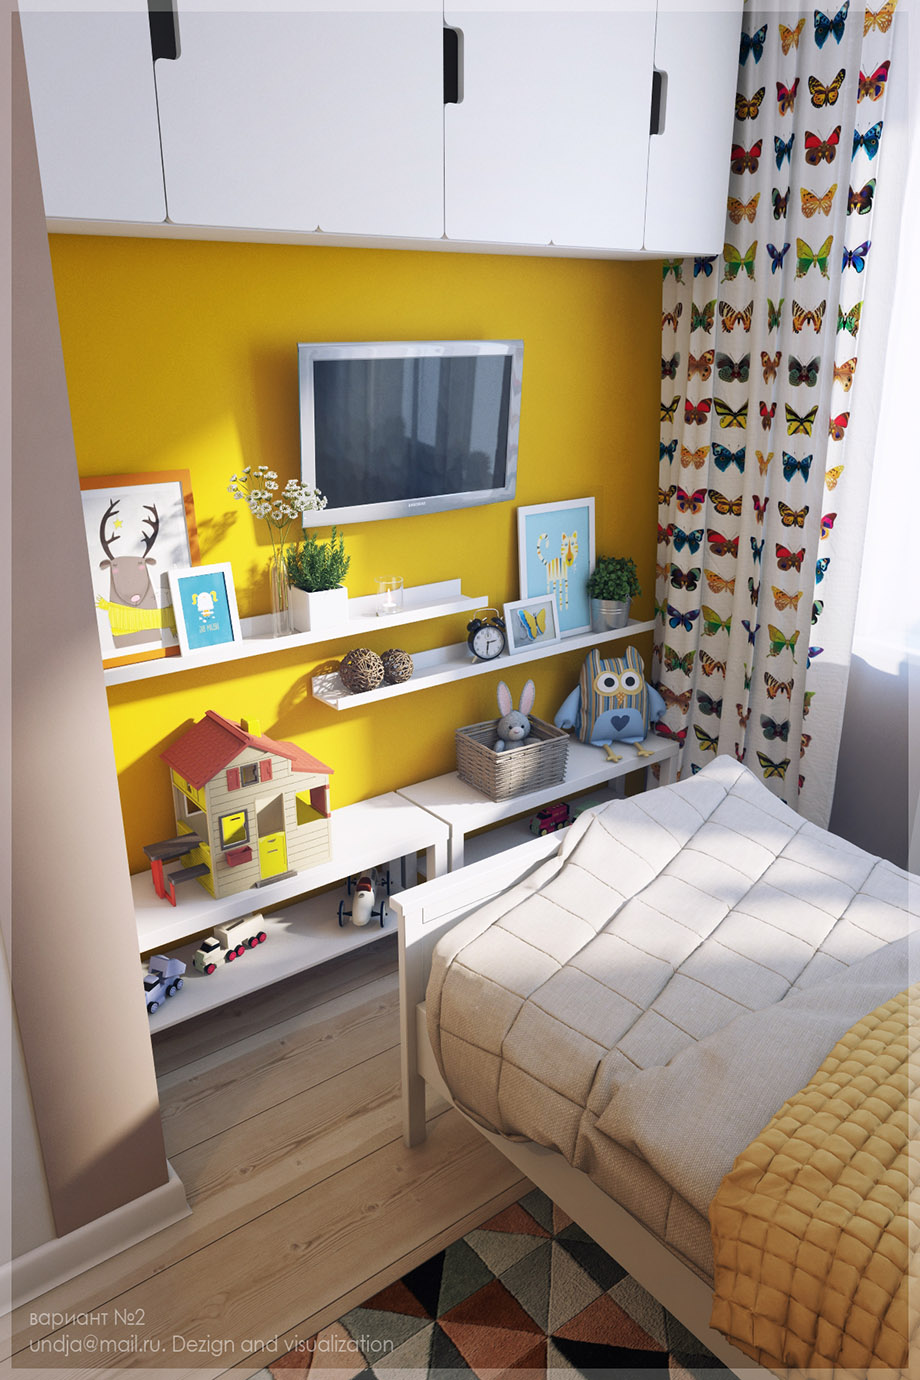 ผนังห้องนอนสีเหลืองให้ความรู้สึกสดชื่นแจ่มใส